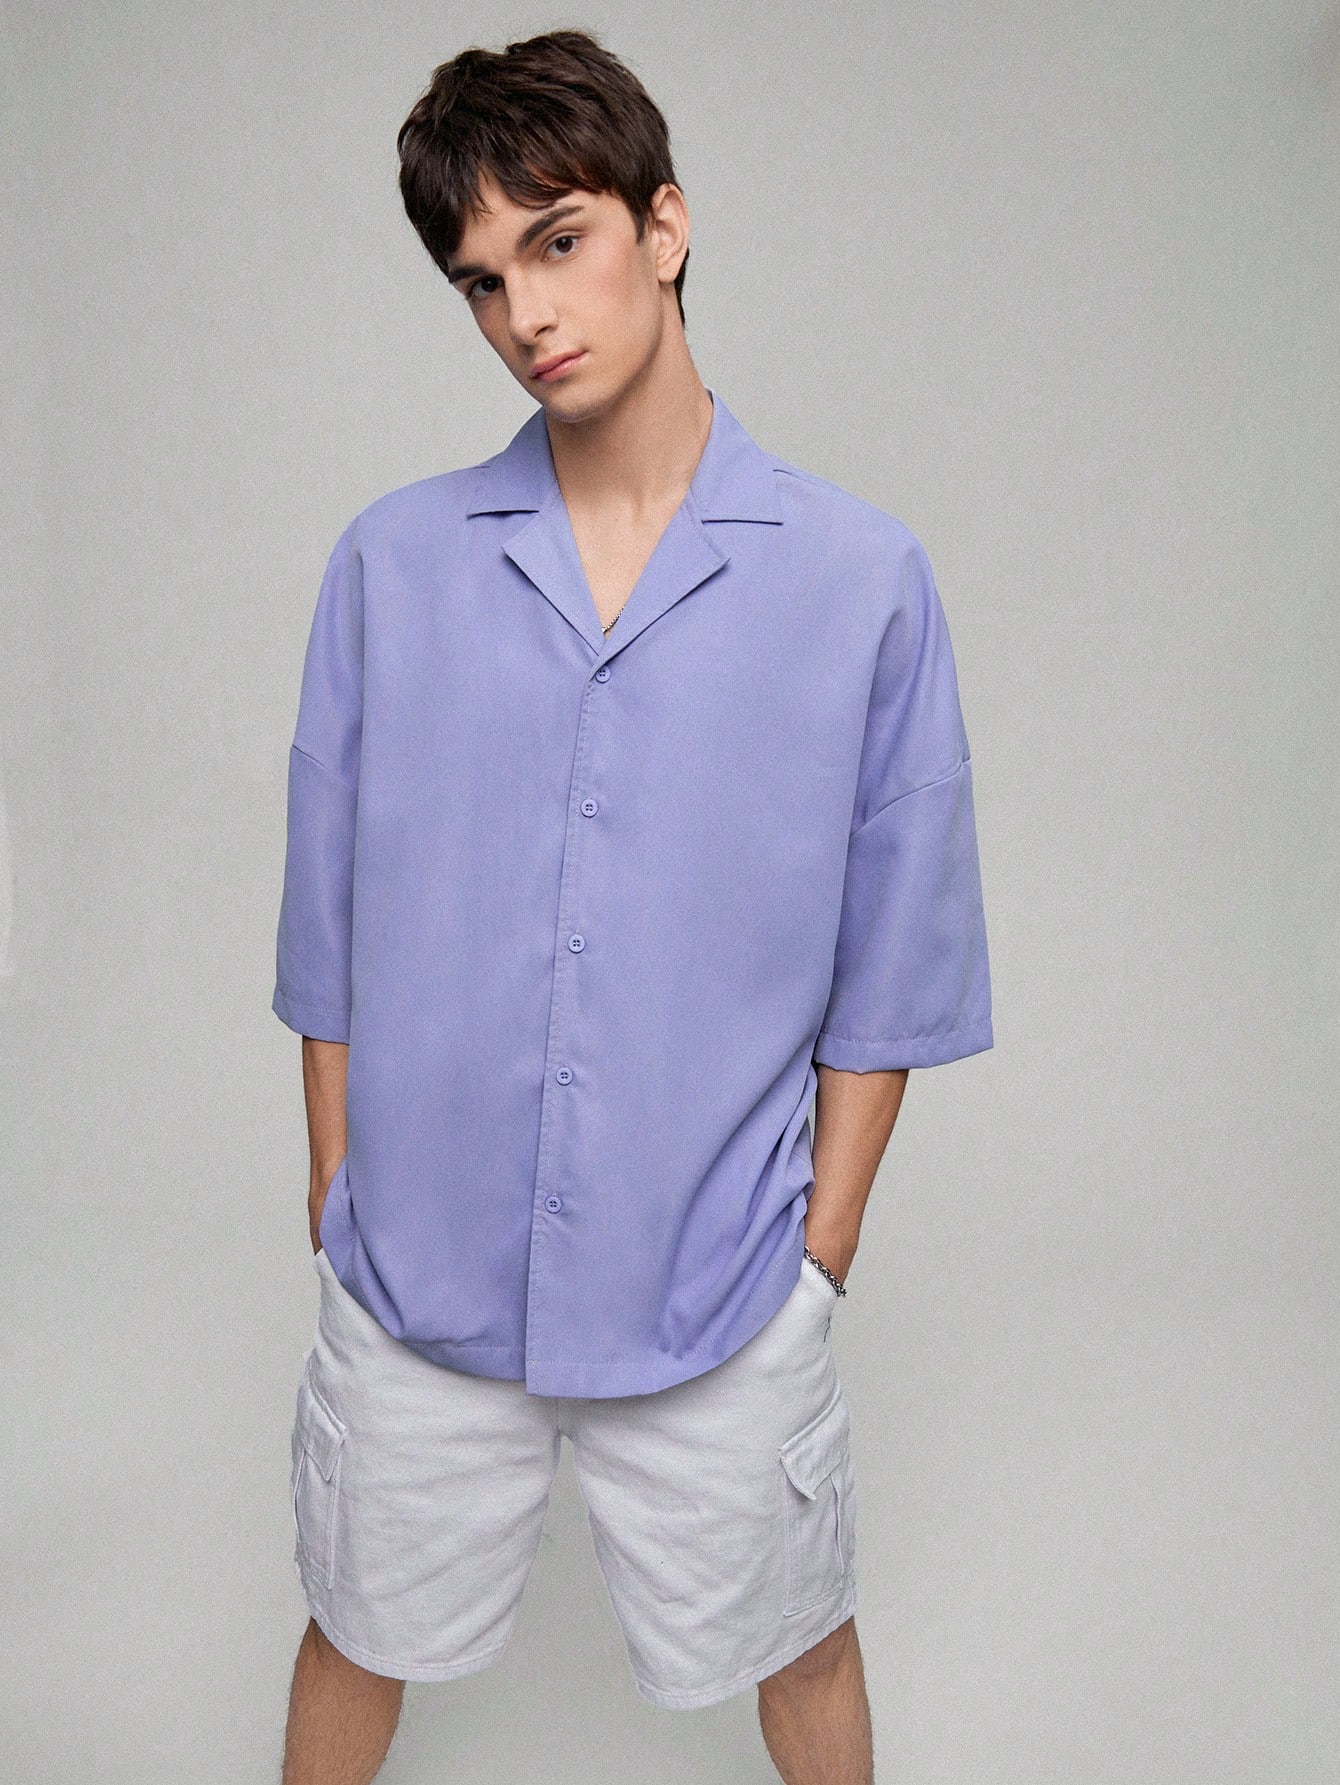 Мужская однотонная рубашка с заниженными плечами Manfinity, фиолетовый